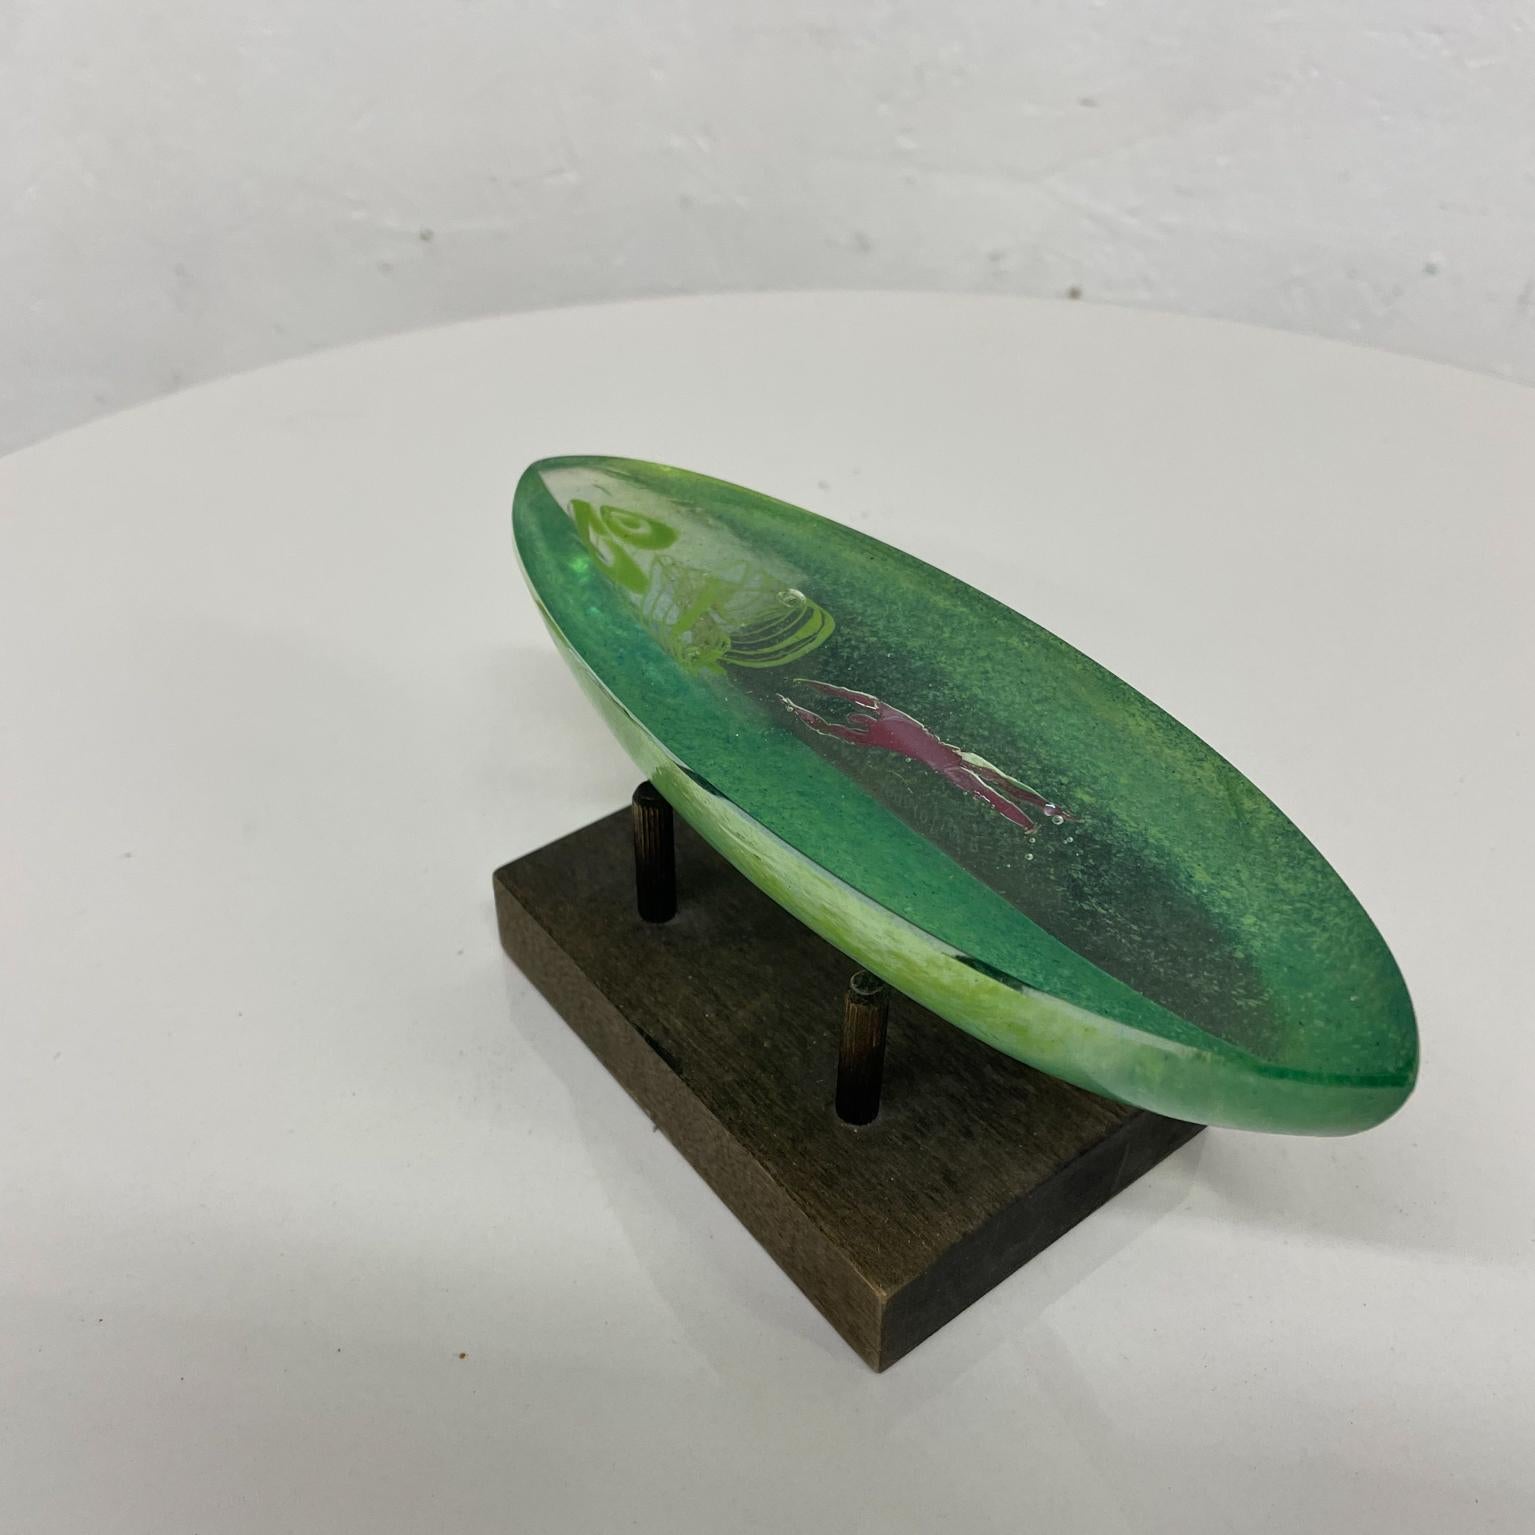 Contemporary Bertil Vallien Kosta Boda Modern Green Boat with Man Swedish Art Glass Sculpture